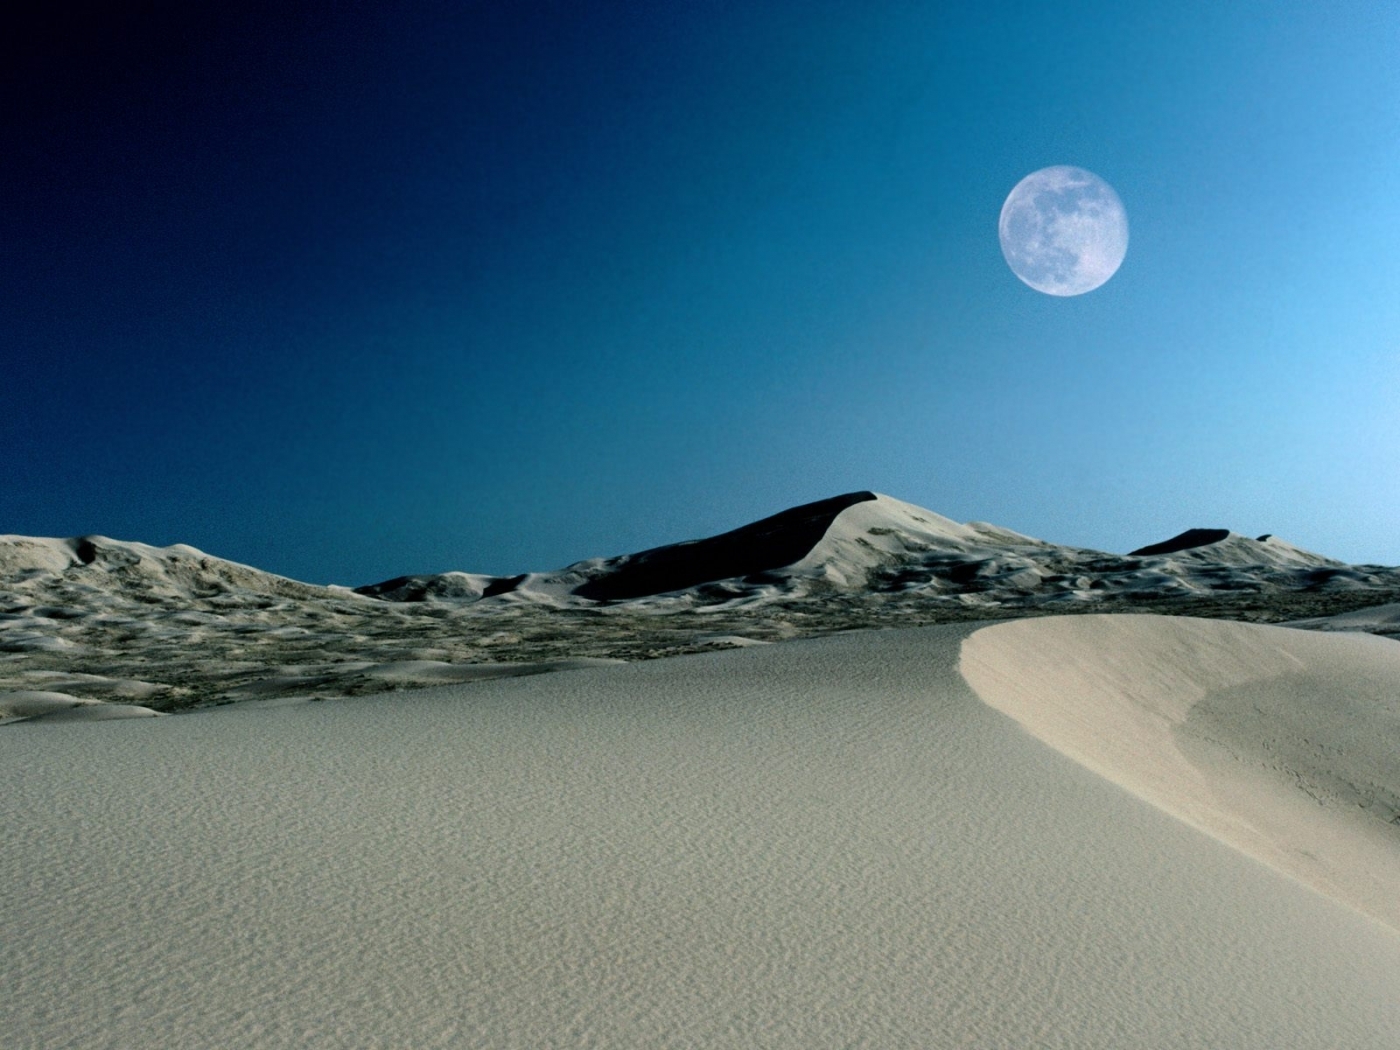 Скачать обои бесплатно Пустыня, Пейзаж, Луна картинка на рабочий стол ПК